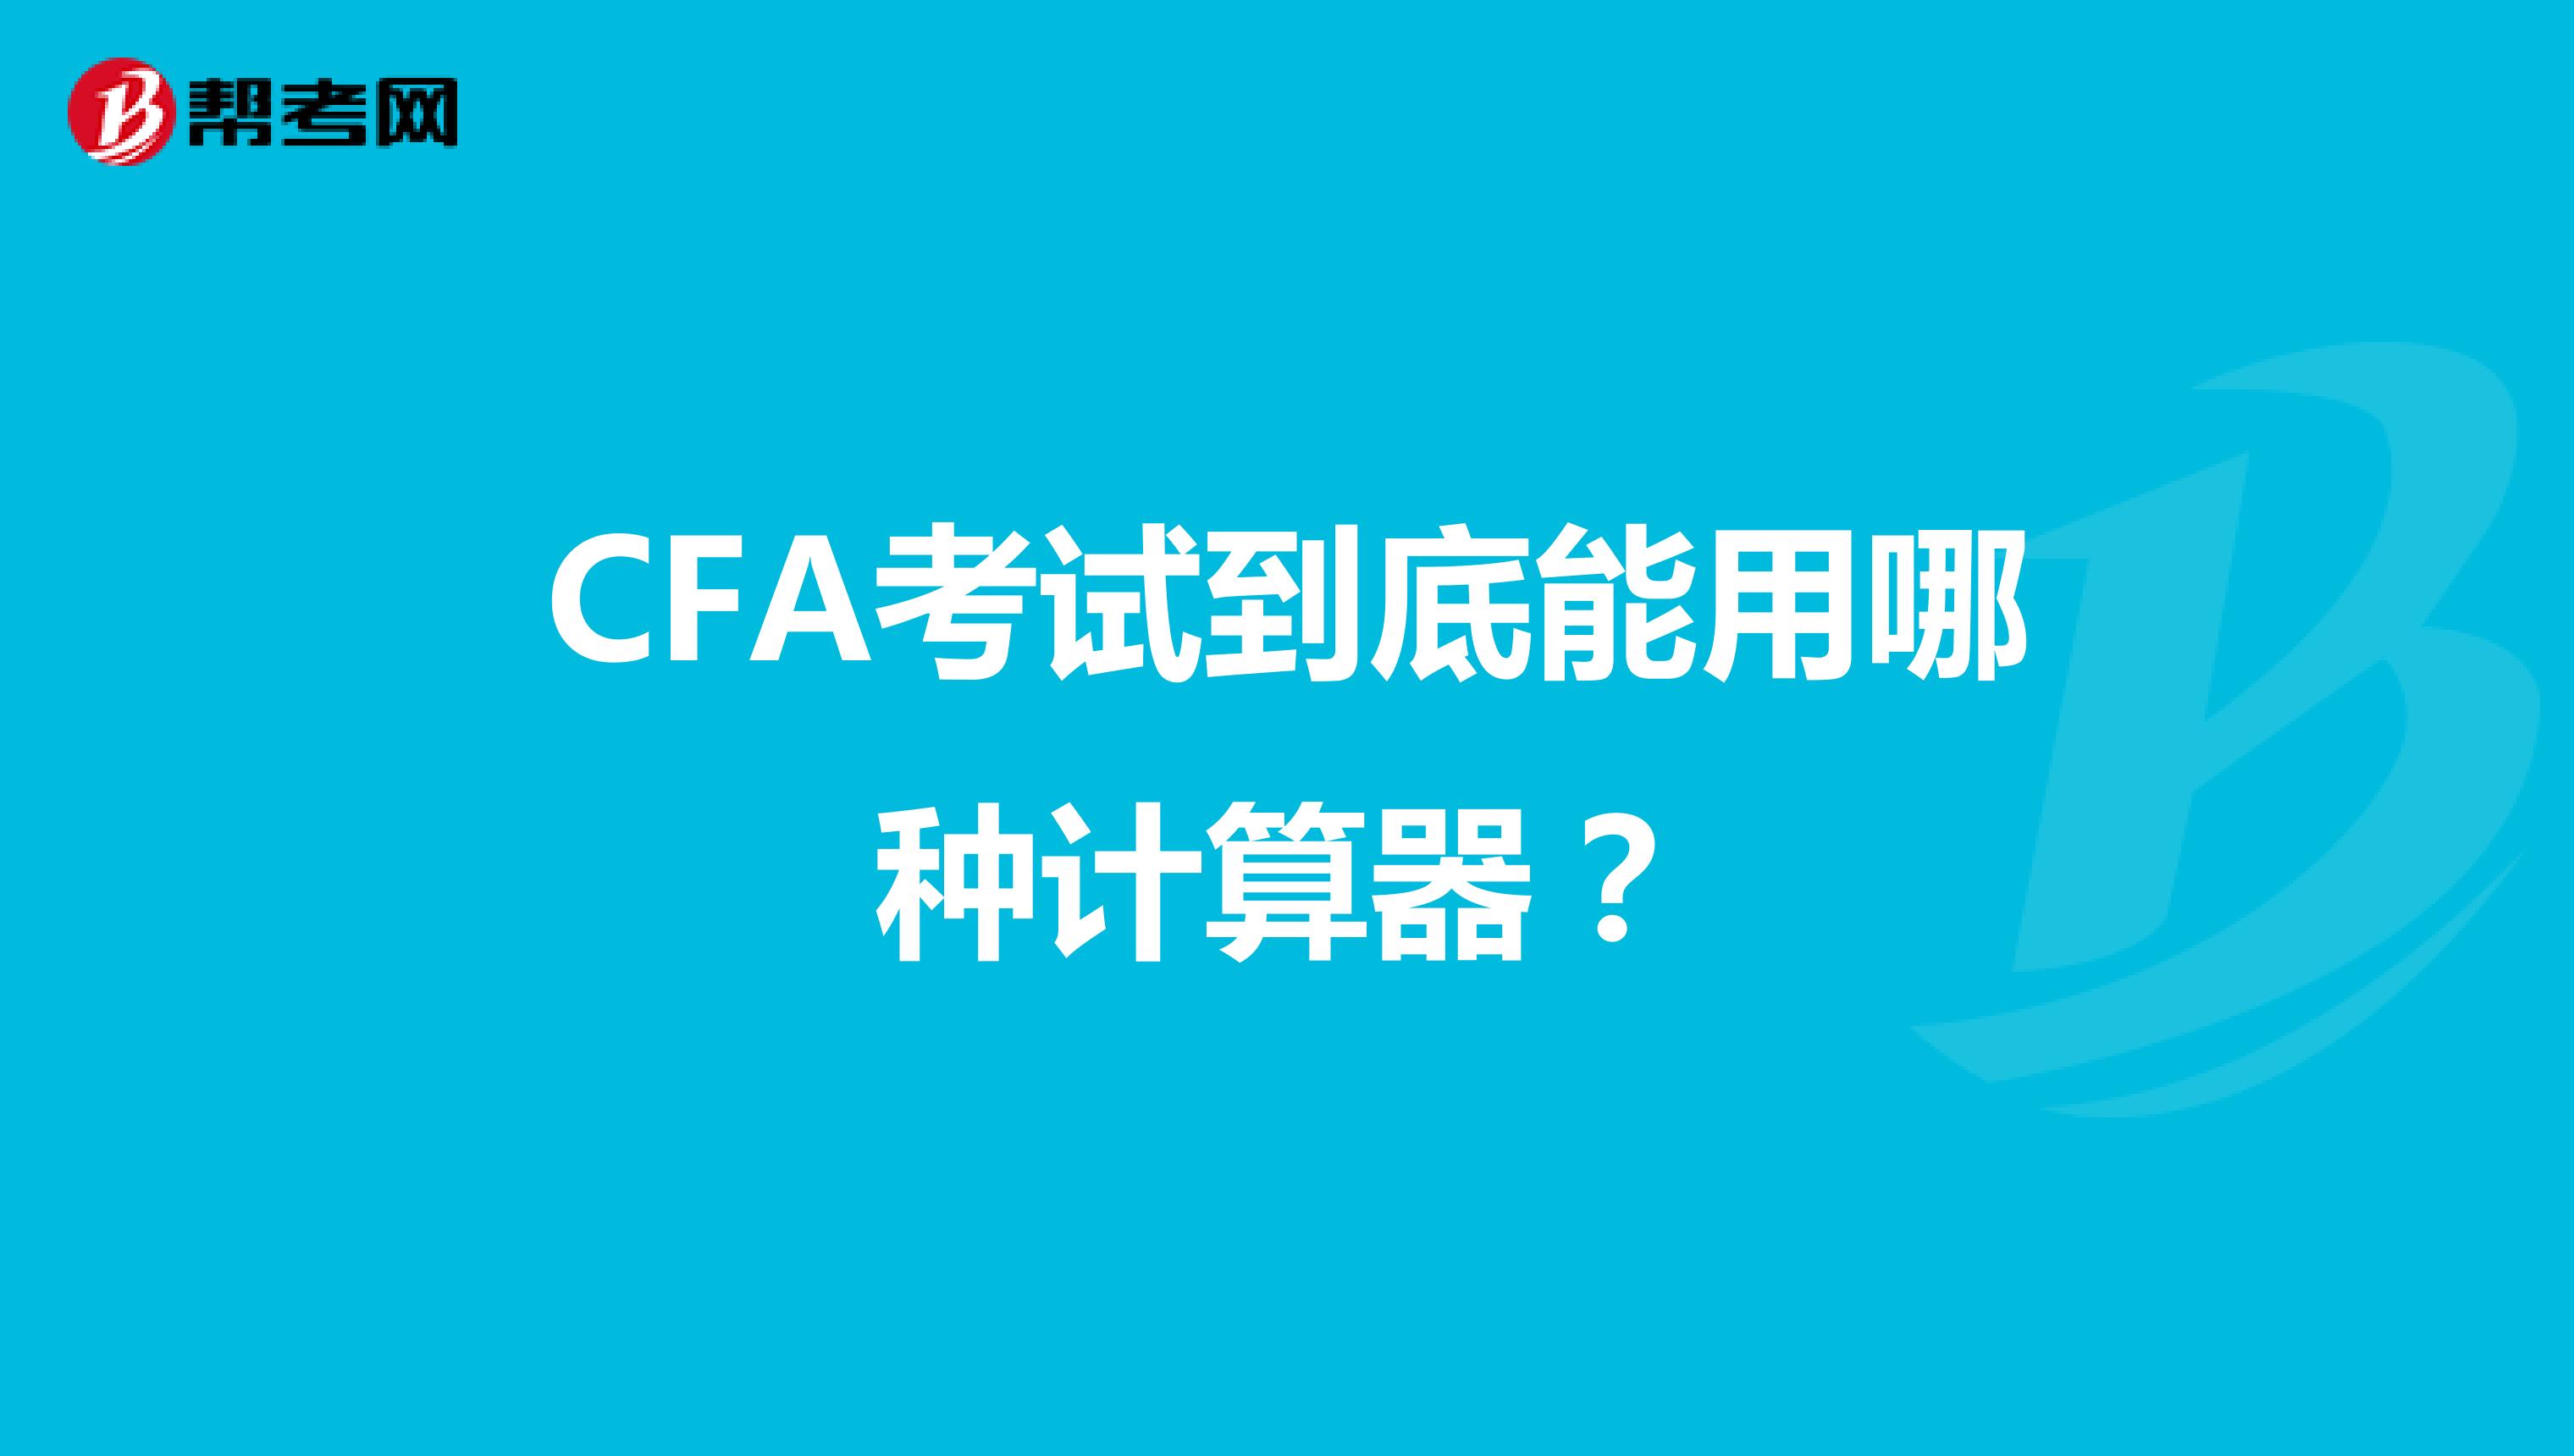 CFA考试到底能用哪种计算器？